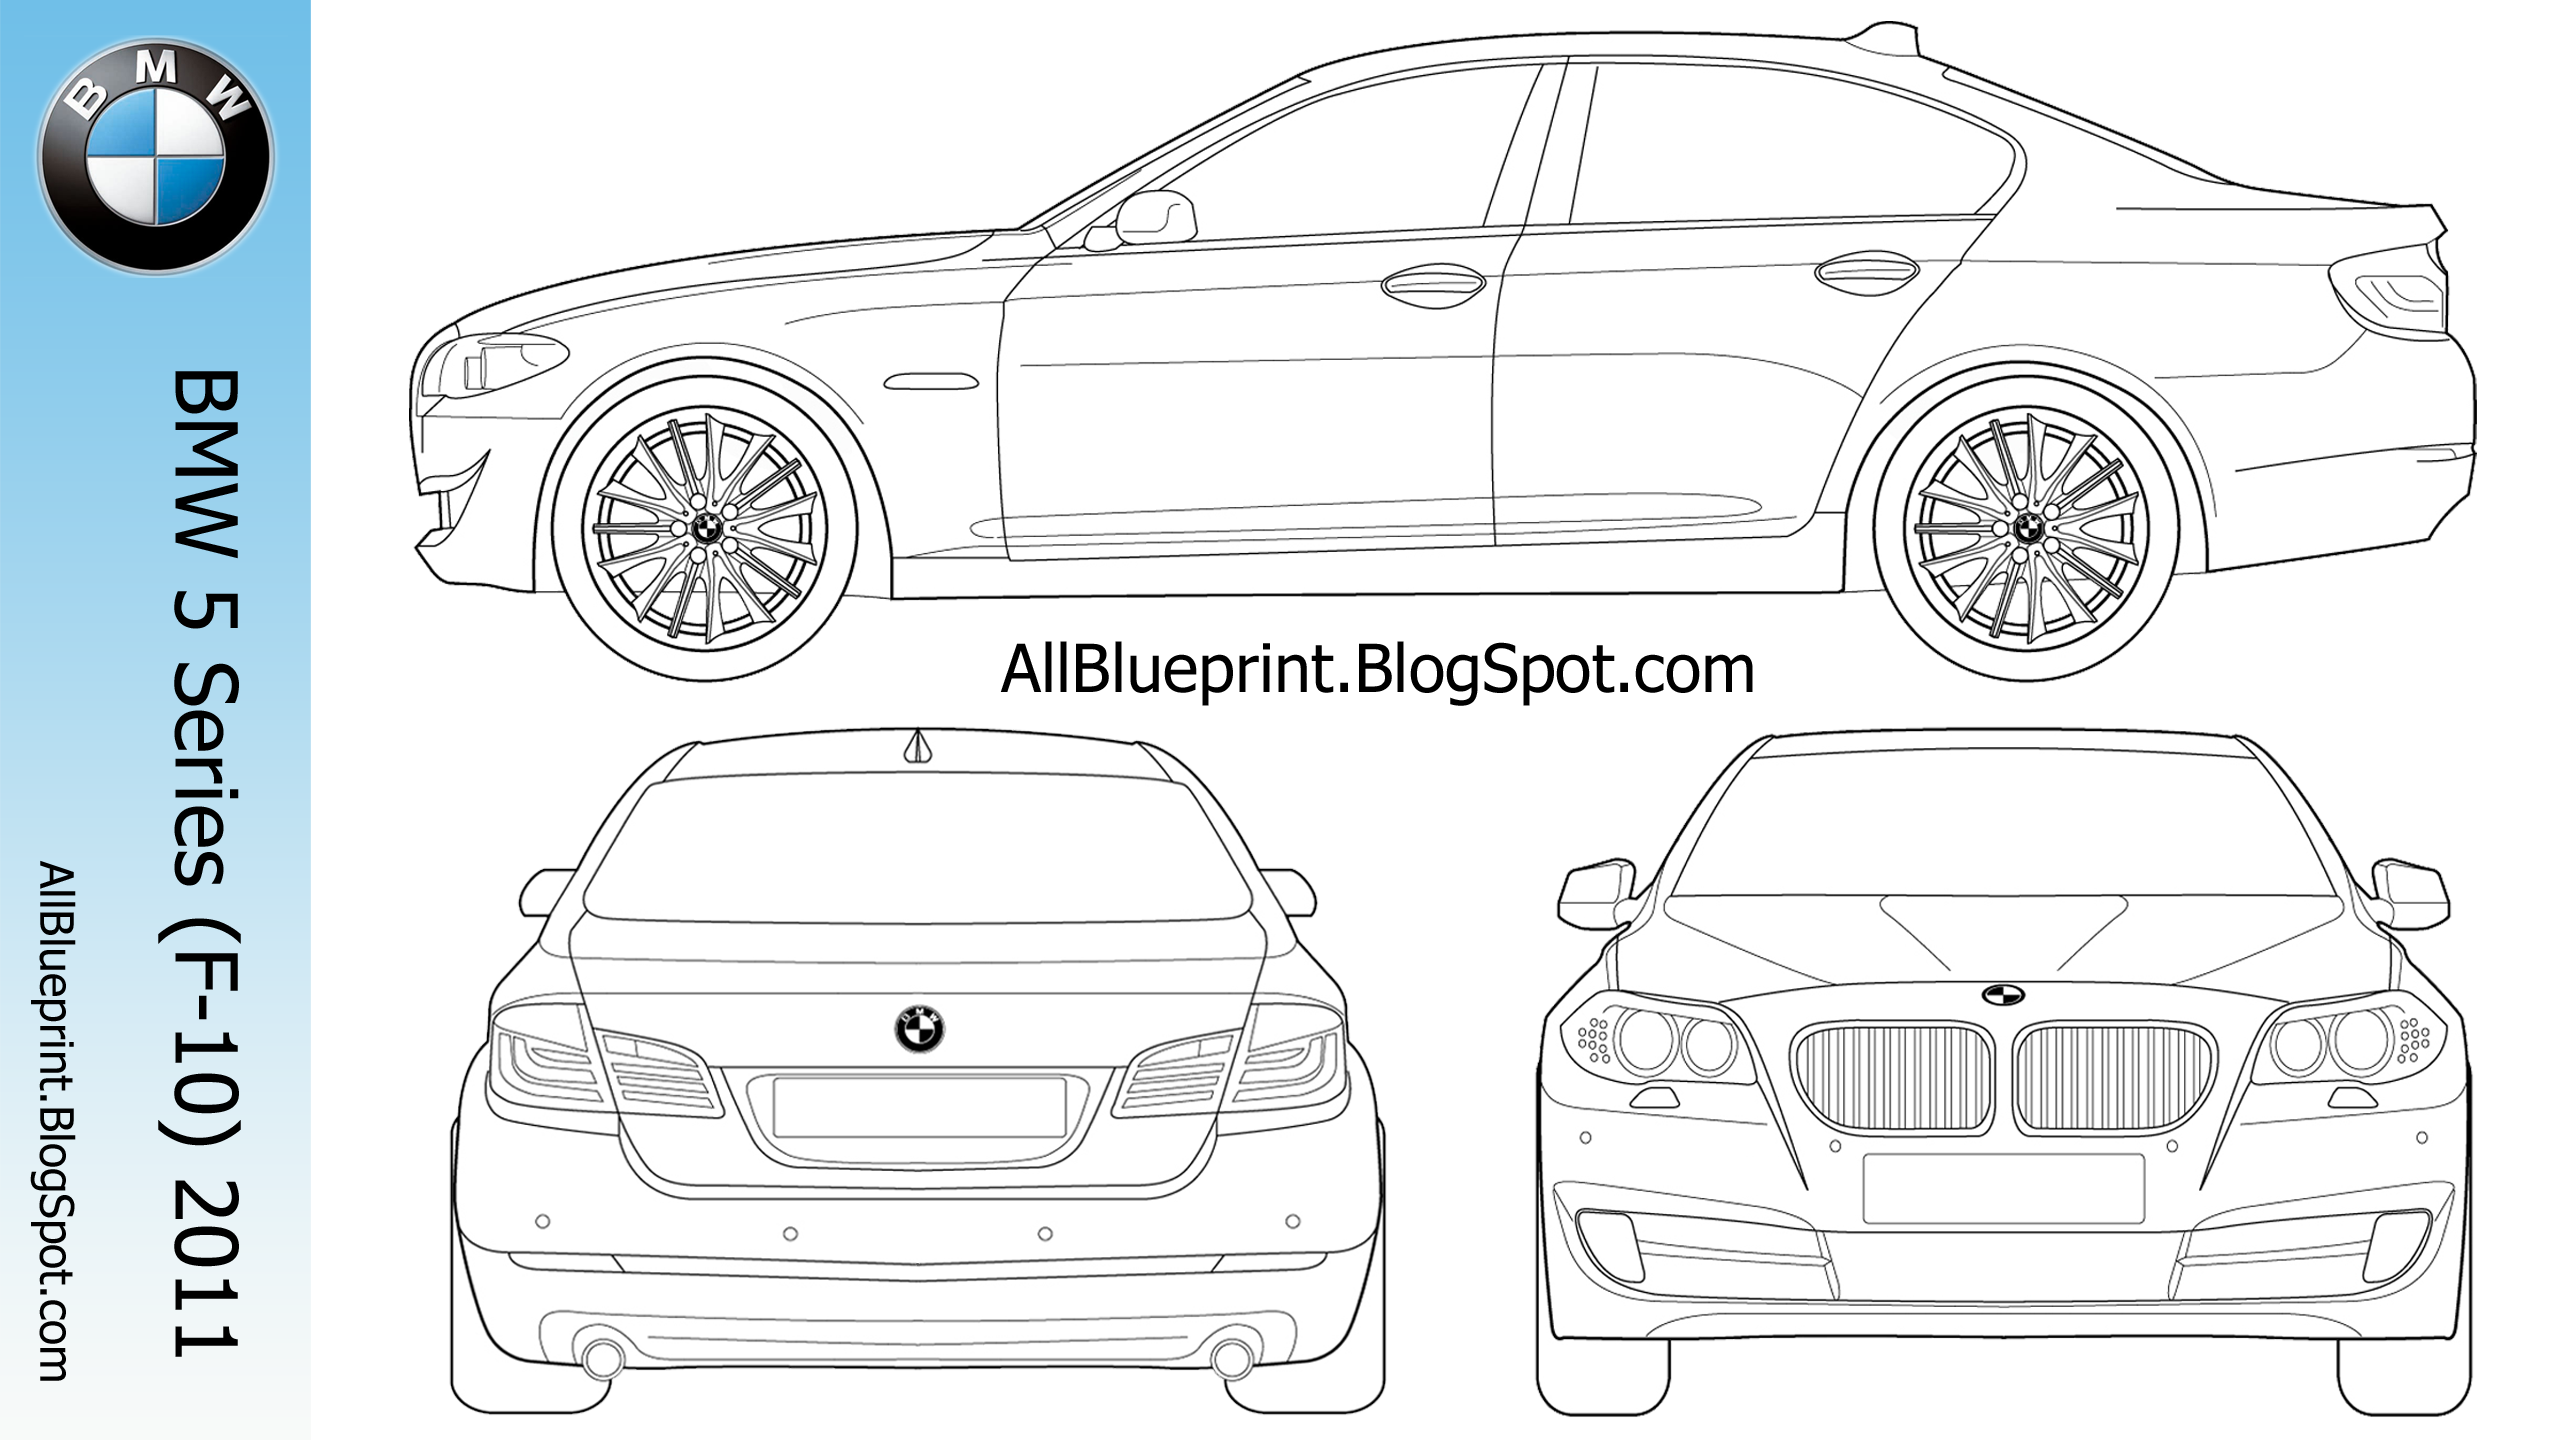 BMW m5 e60 Blueprint. Чертеж BMW m5 f10. BMW e60 чертеж. Чертеж БМВ м5 ф90. Схемы бмв е60